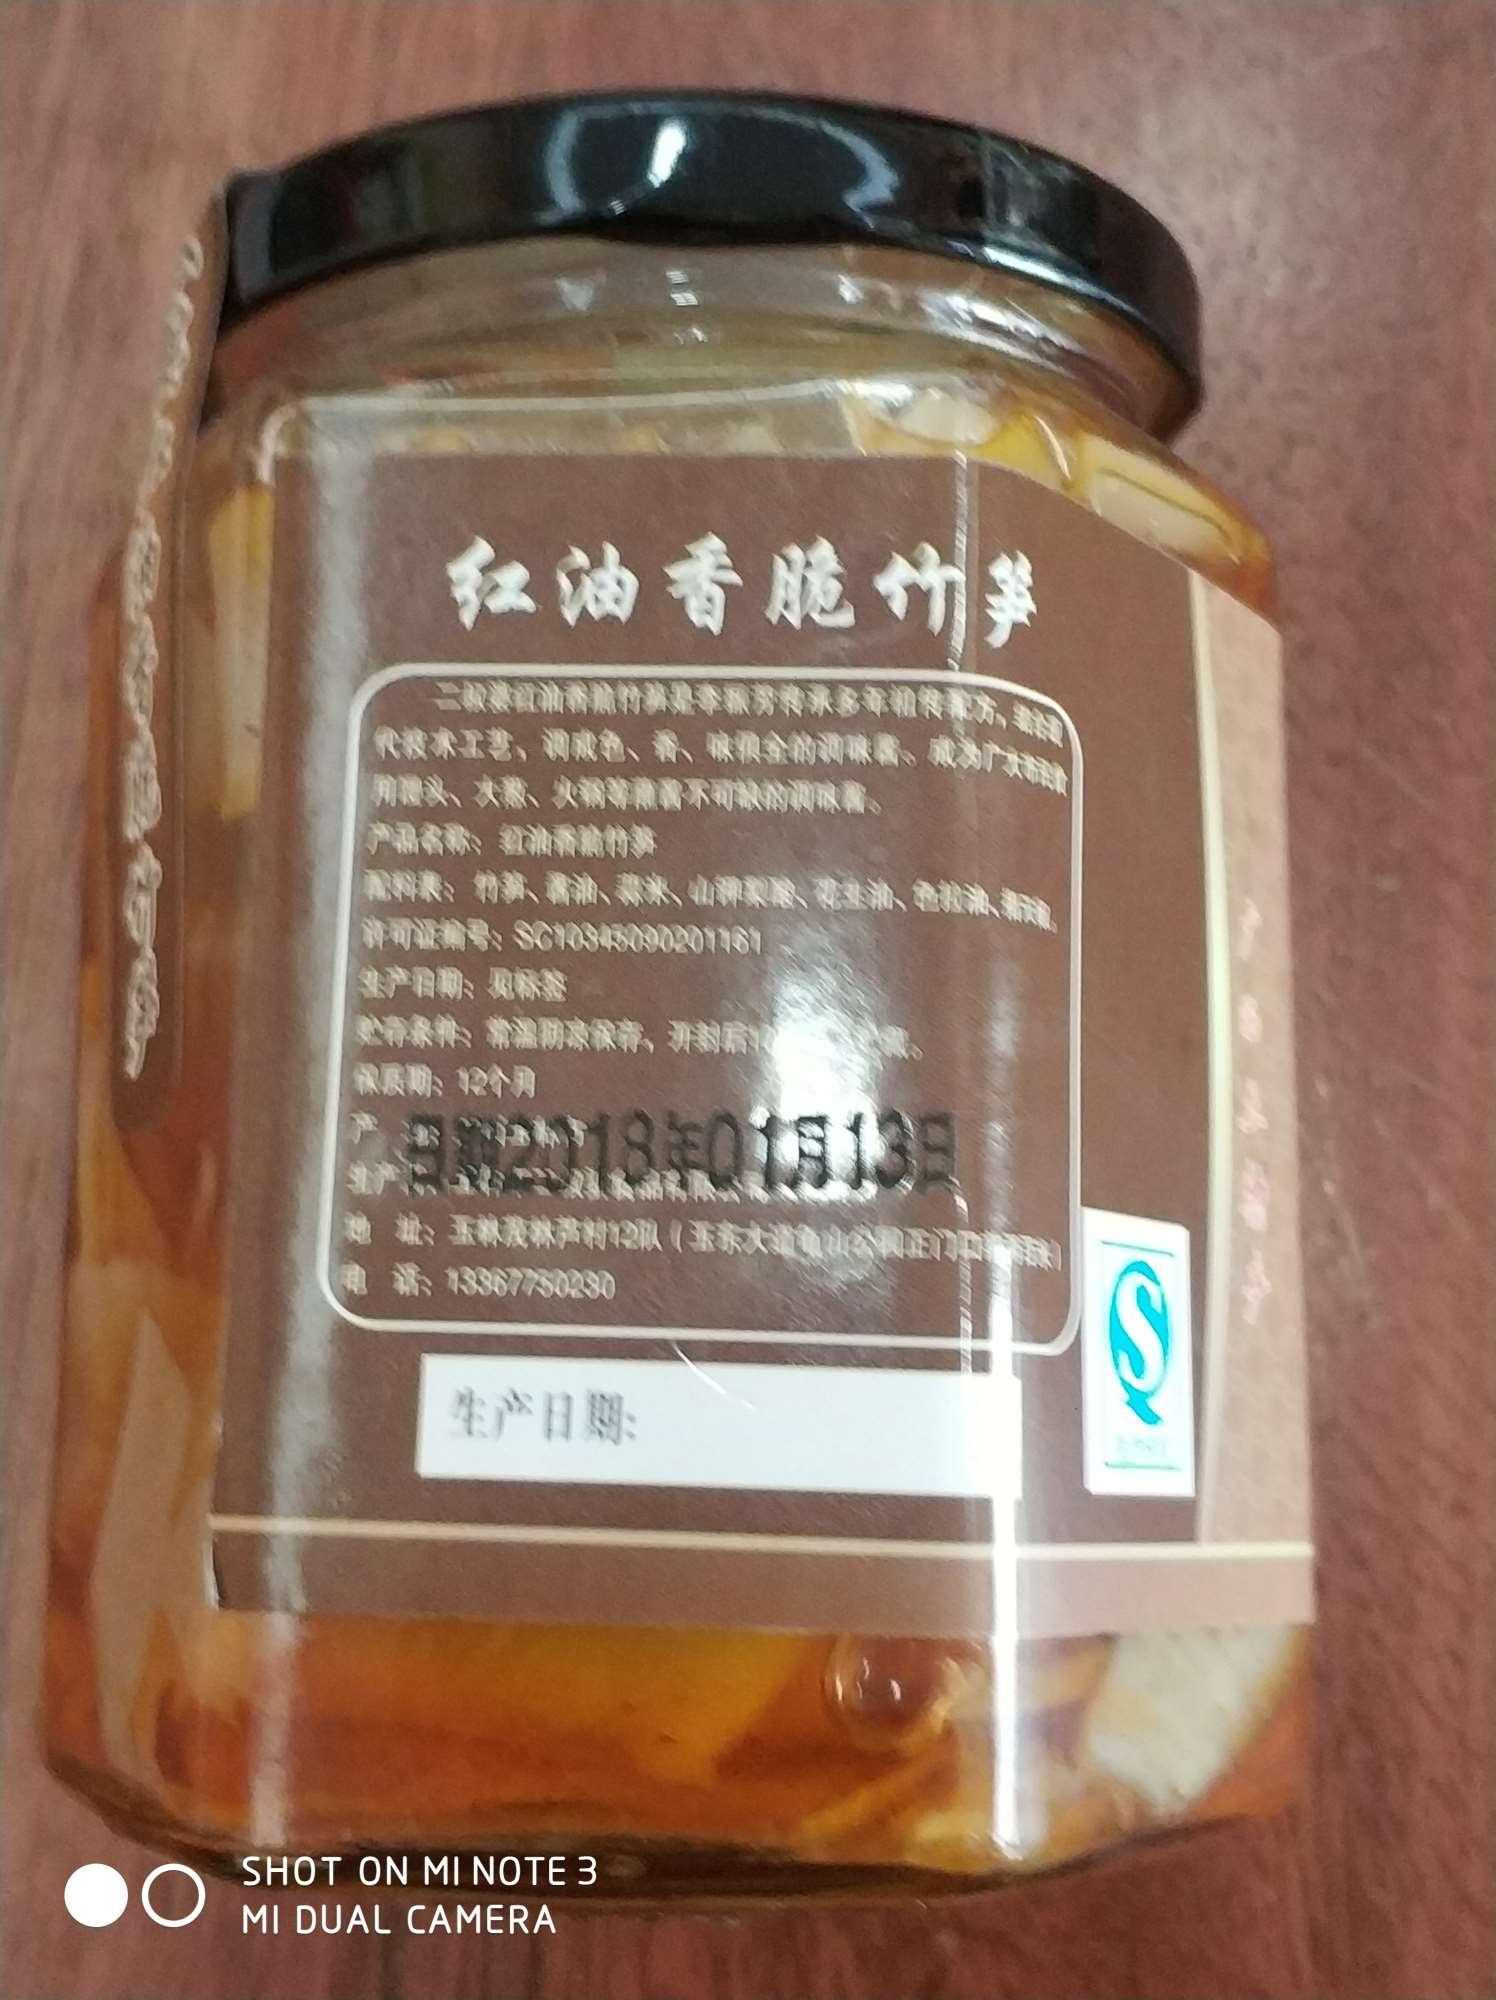 玉林二叔婆豆豉辣椒酱厂家直销红油香脆竹笋